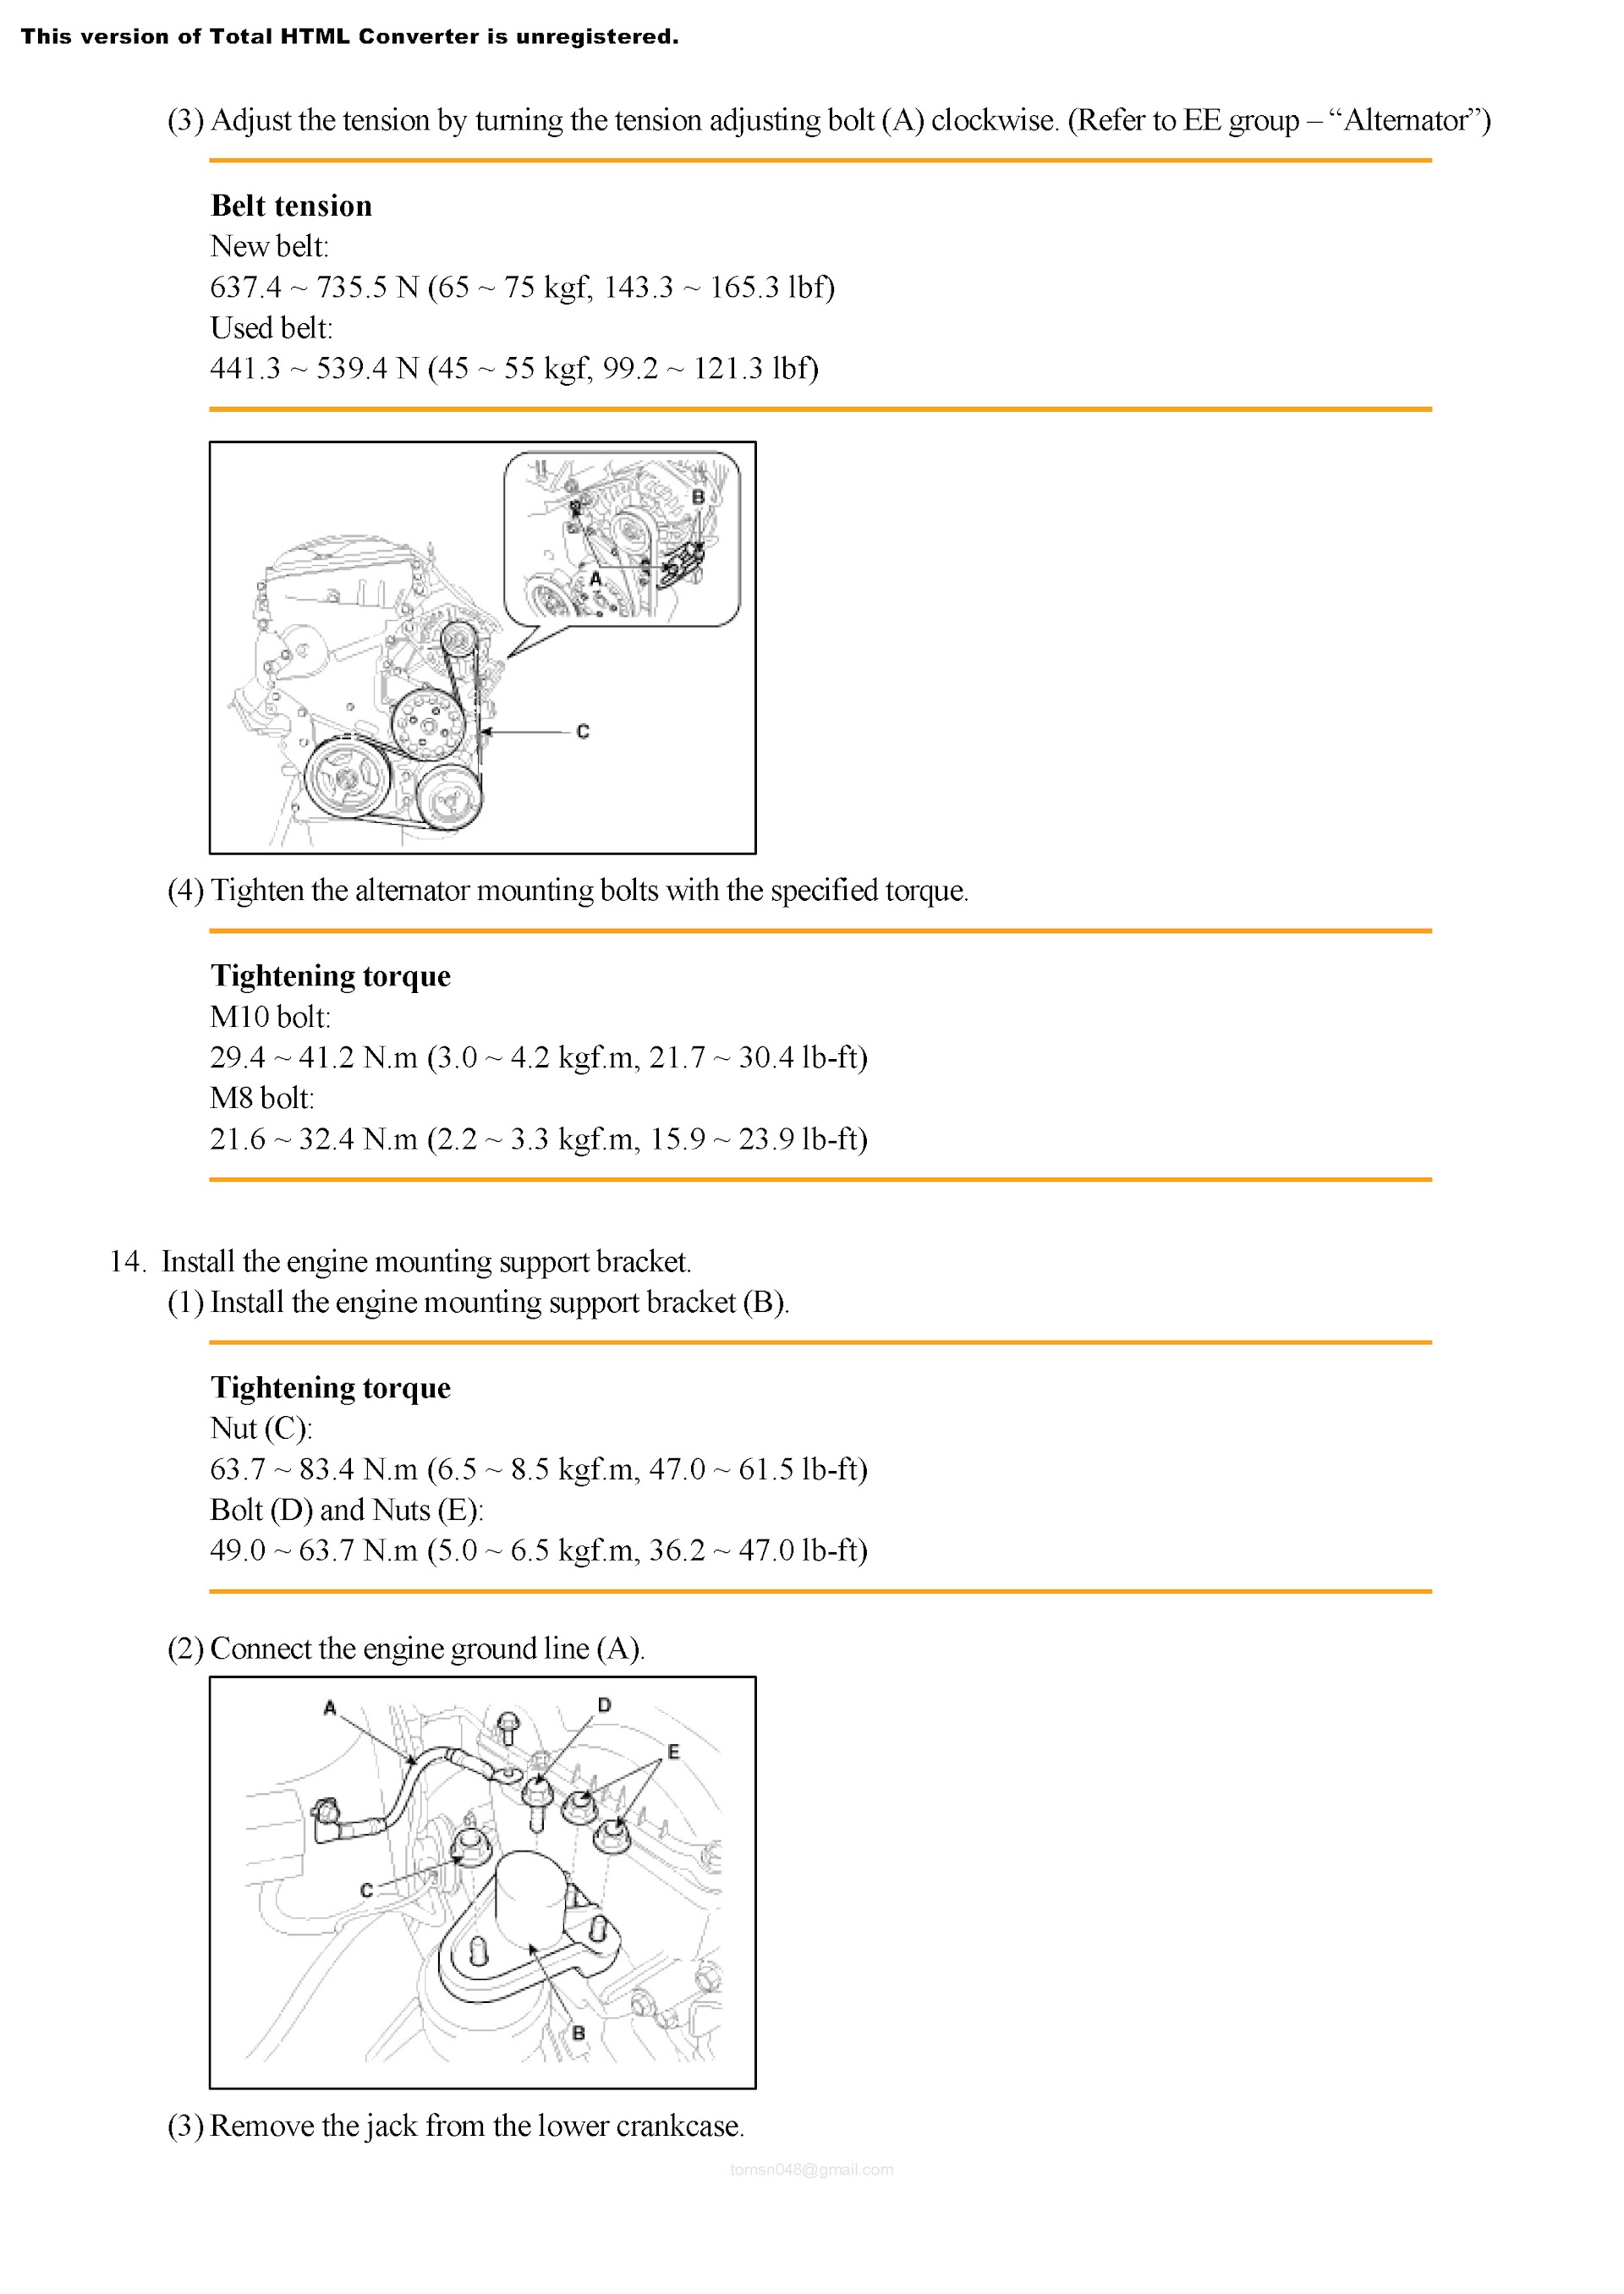 2013 Hyundai Elantra Repair Manual, Alternator Mounting Procedures